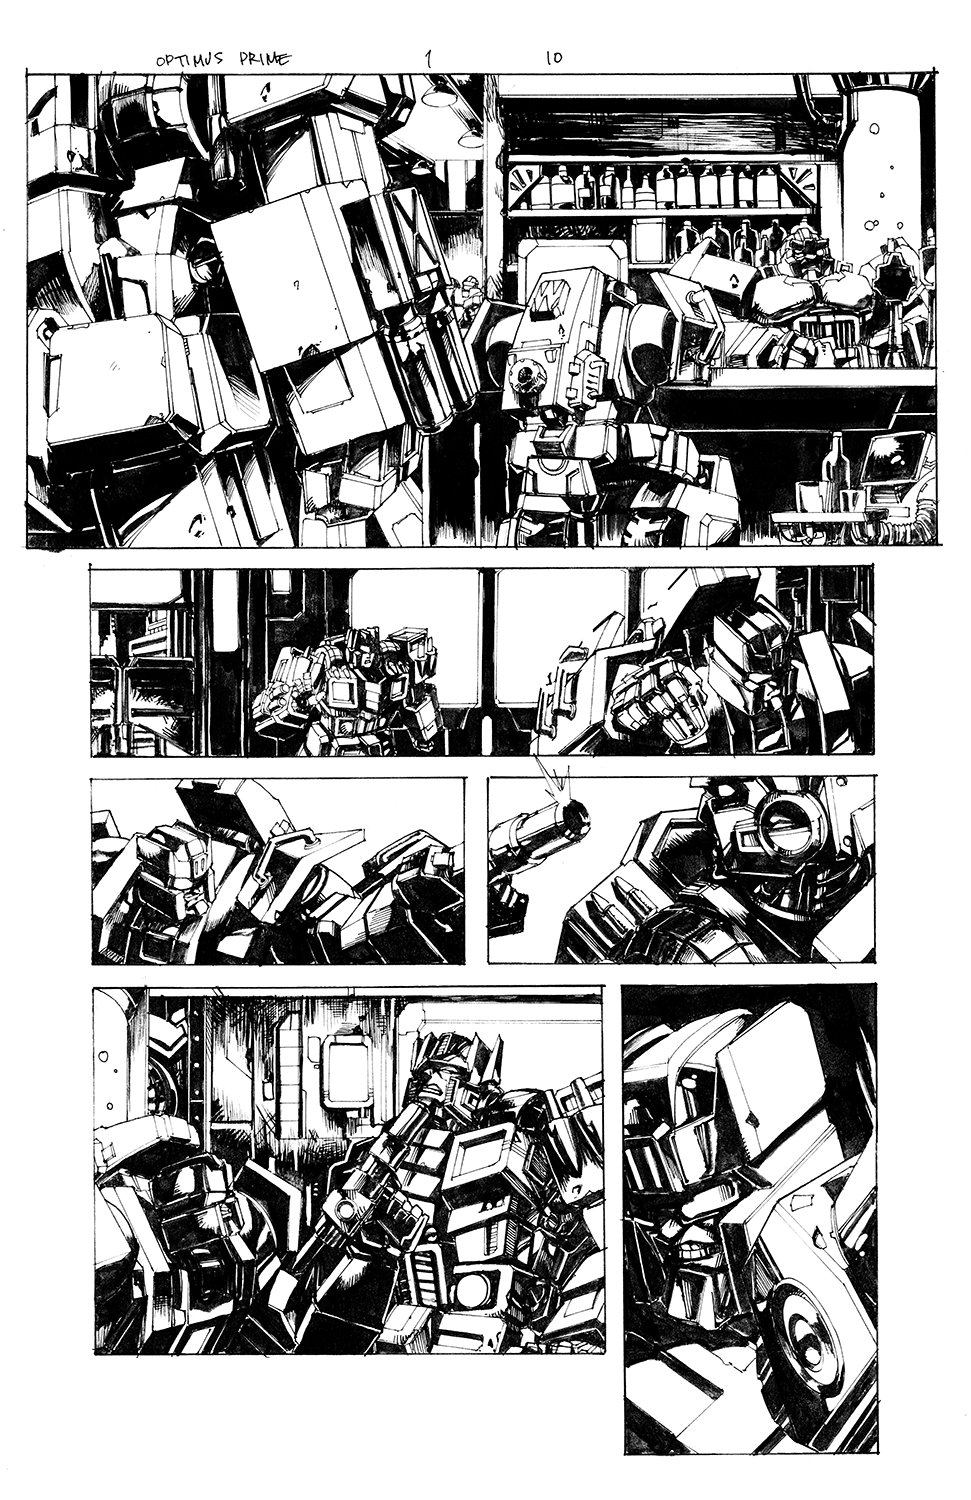 Optimus Prime #1 Page 10